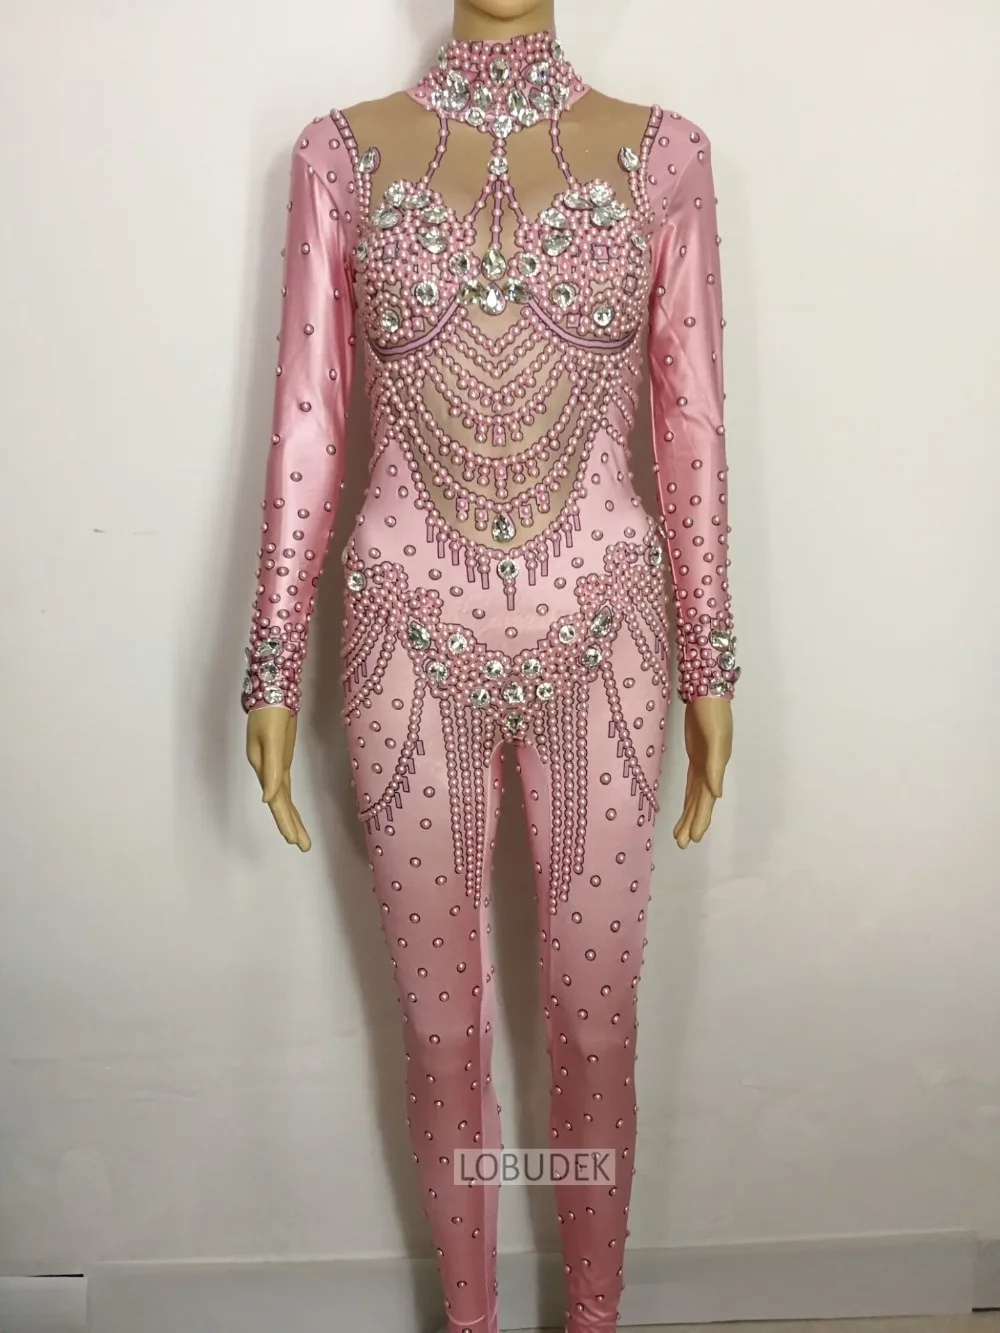 Блестящие Кристаллы Жемчуг Комбинезон розовый стразы эластичное боди Женский костюм День рождения наряд бар певица сценический наряд